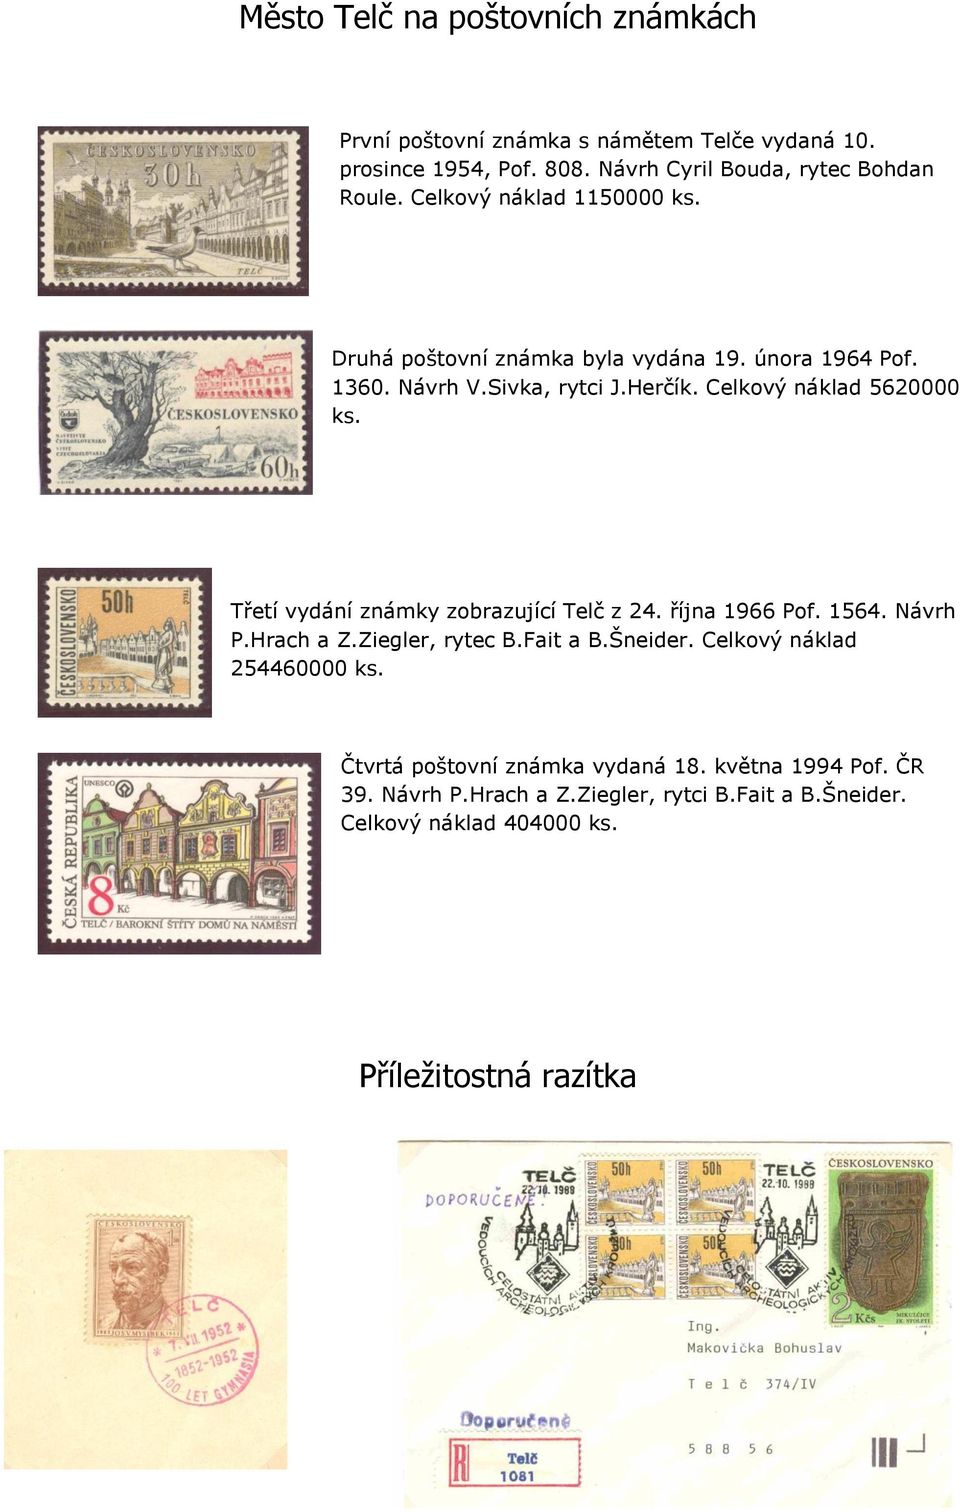 Třetí vydání známky zobrazující Telč z 24. října 1966 Pof. 1564. Návrh P.Hrach a Z.Ziegler, rytec B.Fait a B.Šneider. Celkový náklad 254460000 ks.